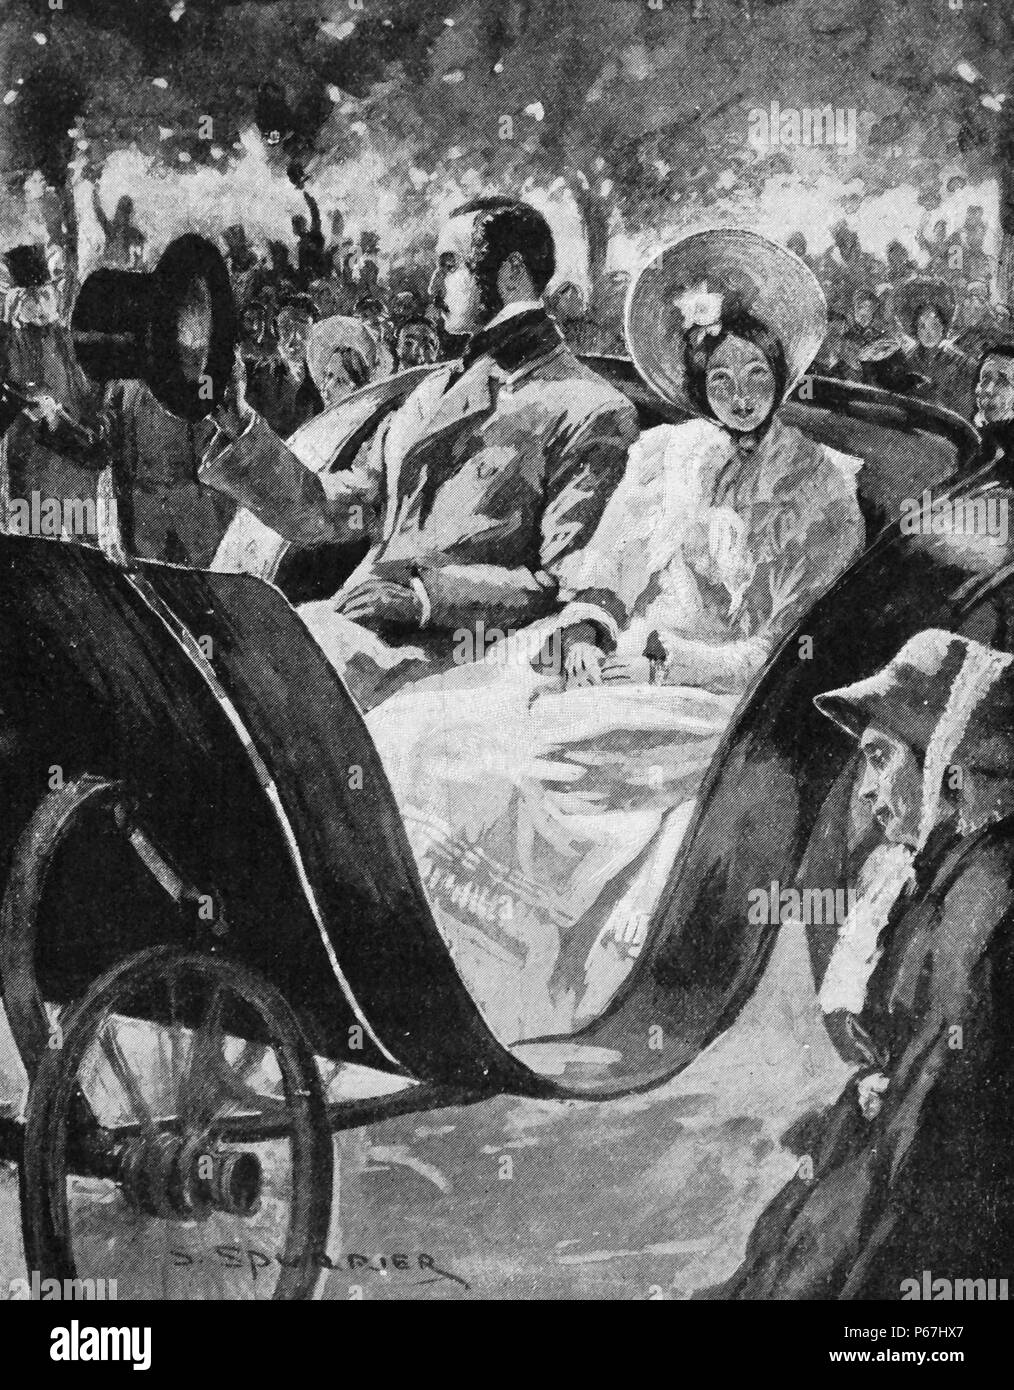 La reine Victoria de Grande-Bretagne et de Prince Albert équitation dans un transport 1840. Victoria (Alexandrina Victoria ; 24 mai 1819 - 22 janvier 1901) a été le monarque du Royaume-Uni de Grande-Bretagne et d'Irlande de 20 juin 1837 jusqu'à sa mort. À partir du 1er mai 1876, elle a utilisé le titre supplémentaire de l'Impératrice de l'Inde Banque D'Images